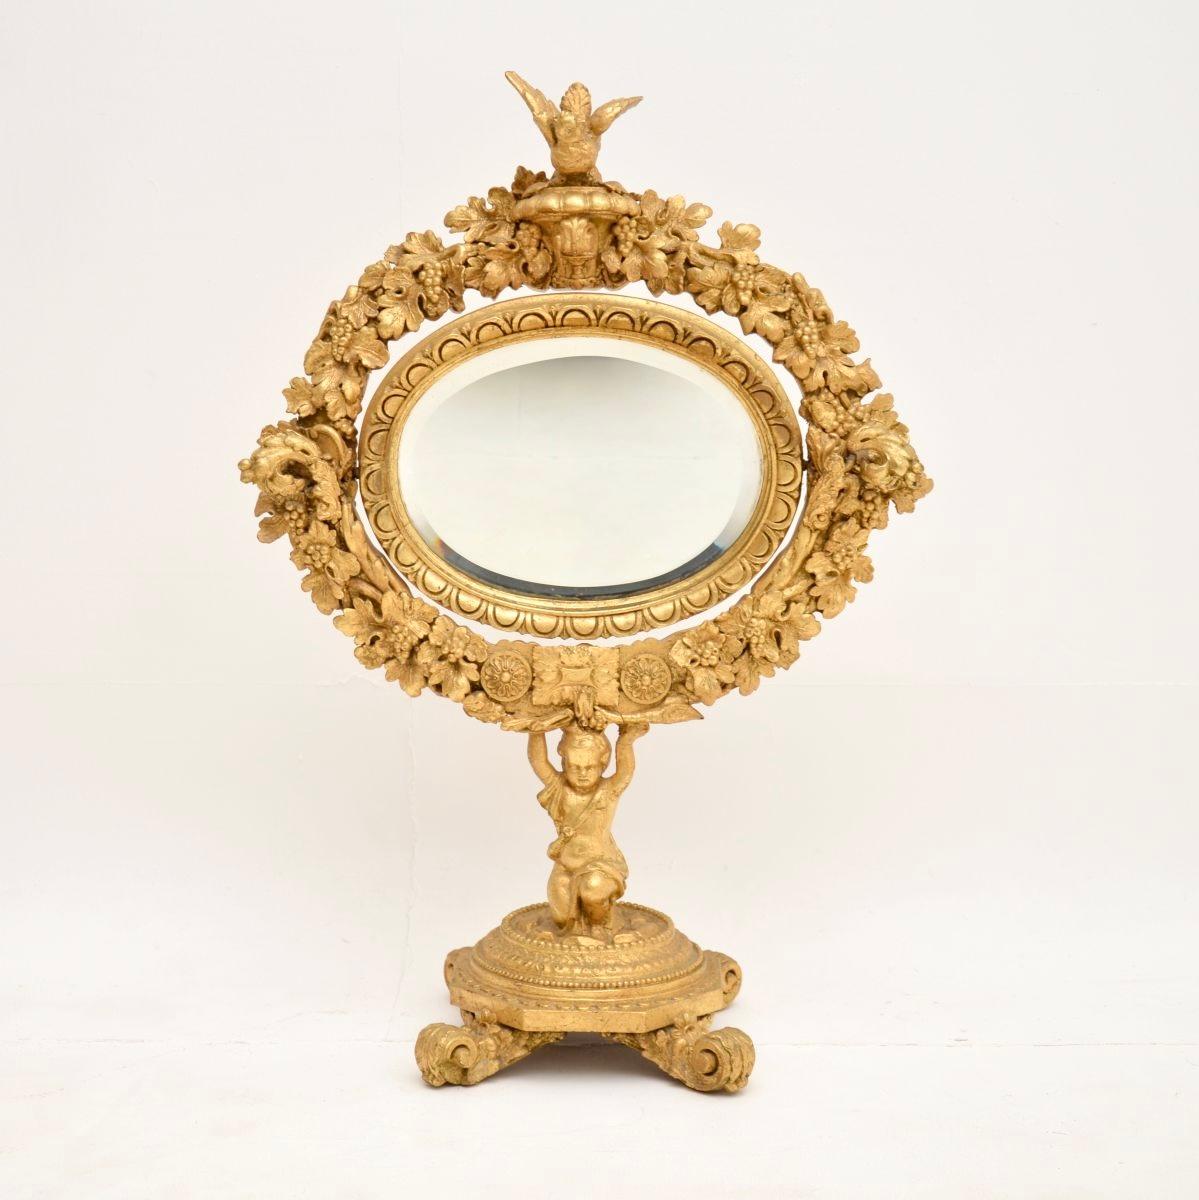 Un superbe miroir de courtoisie victorien en bois sculpté et doré, fabriqué en Angleterre et datant d'environ la période 1850-1870.

Il est d'une qualité superbe et d'une taille impressionnante. Il est magnifiquement sculpté avec des détails